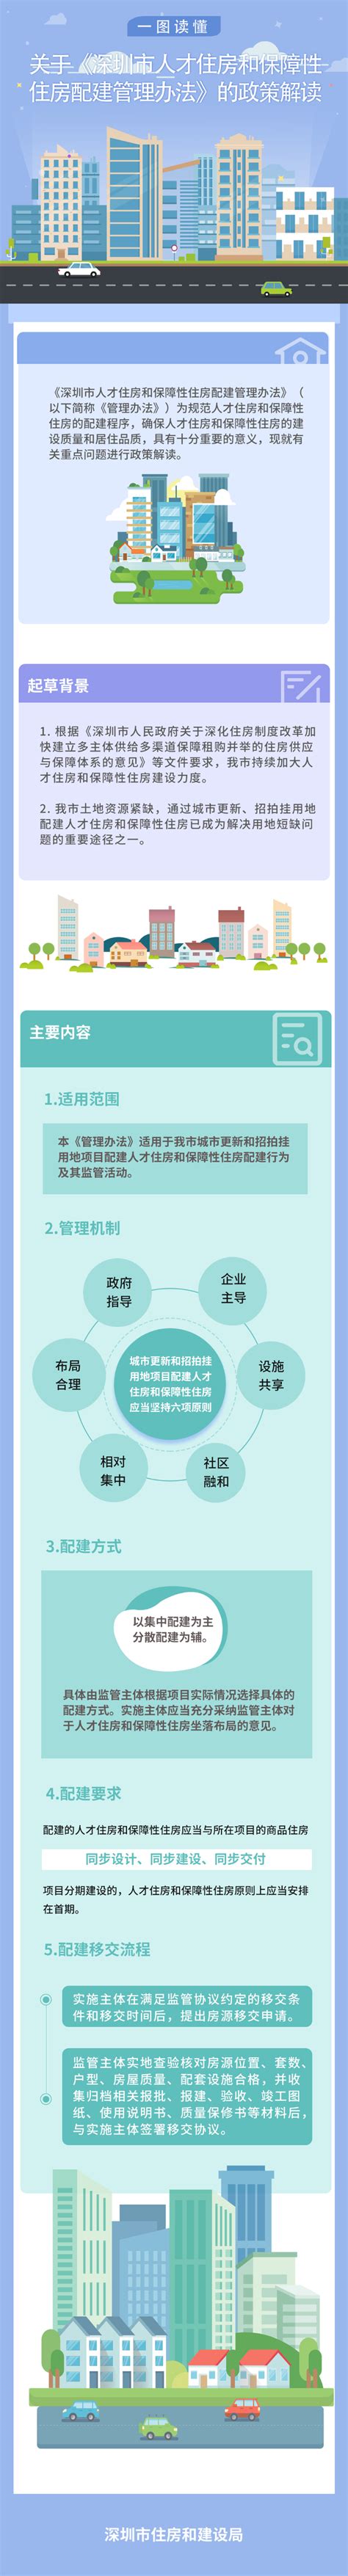 （图解）《深圳市人才住房和保障性住房配建管理办法》政策解读-深圳市住房和建设局网站